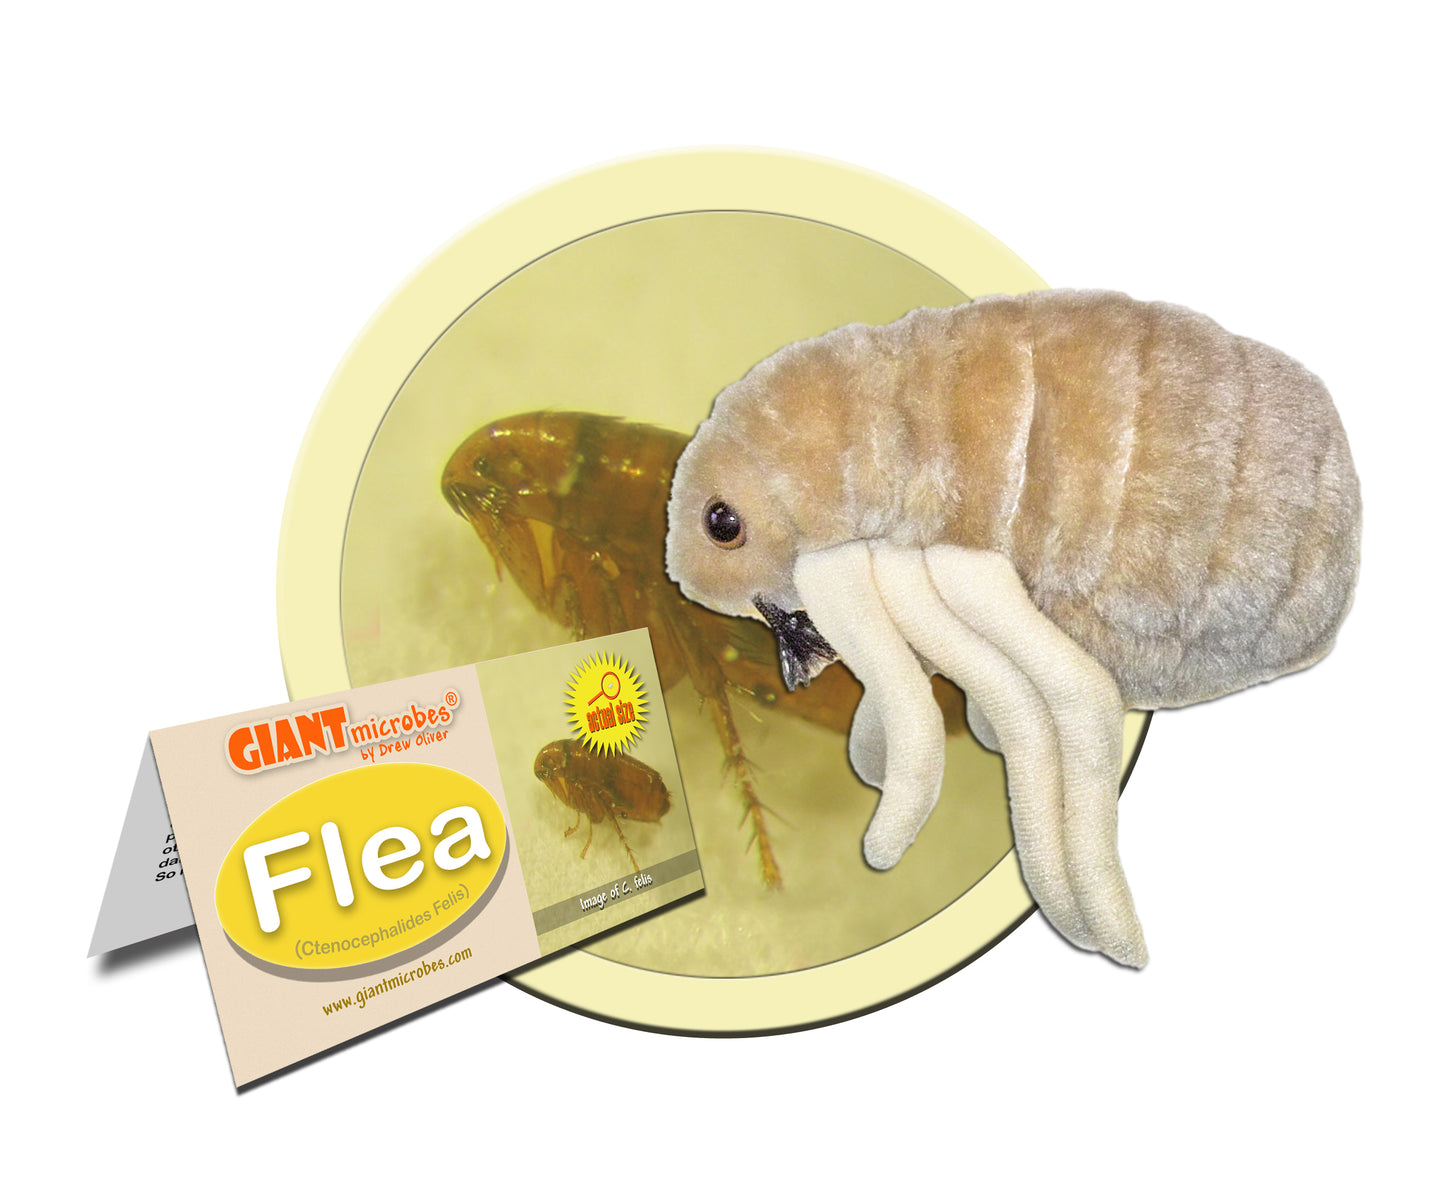 Flea (Ctenocephalides Felis)